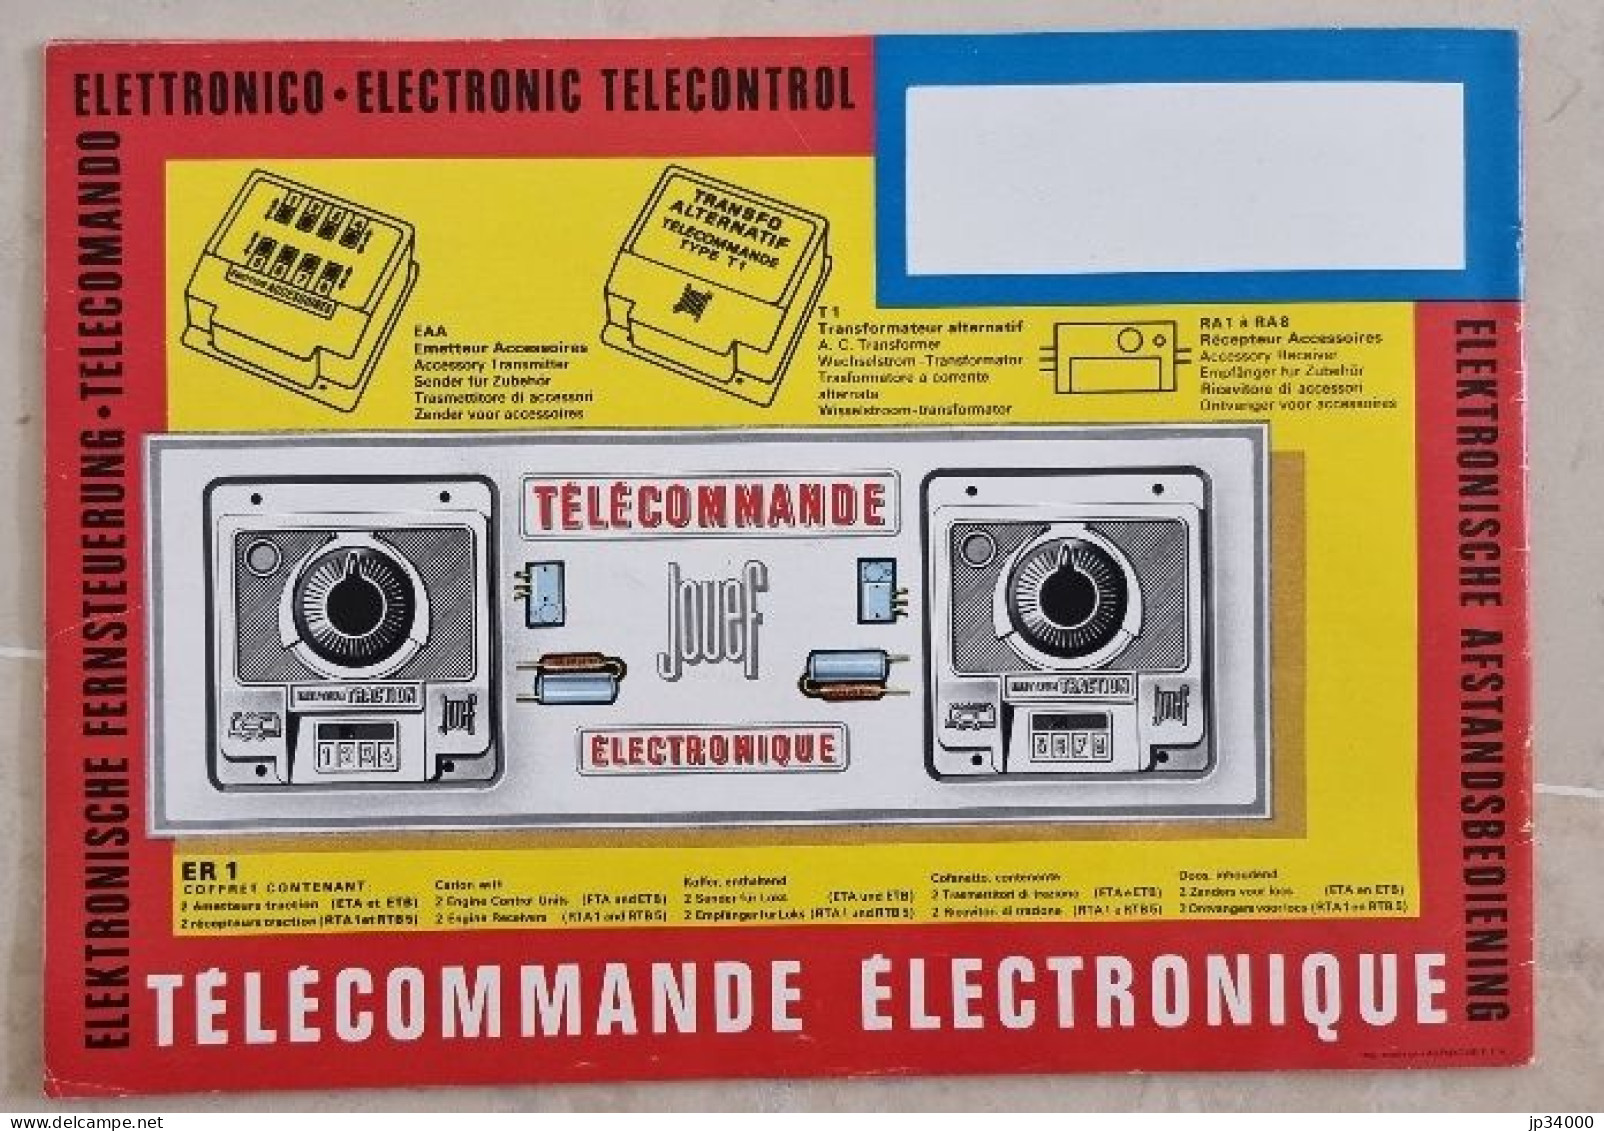 TELECOMMANDE ELECTRONIQUE (Jouef HO) Complet 32 Pages, 1968-69 (Trains Electriques) - Littérature & DVD